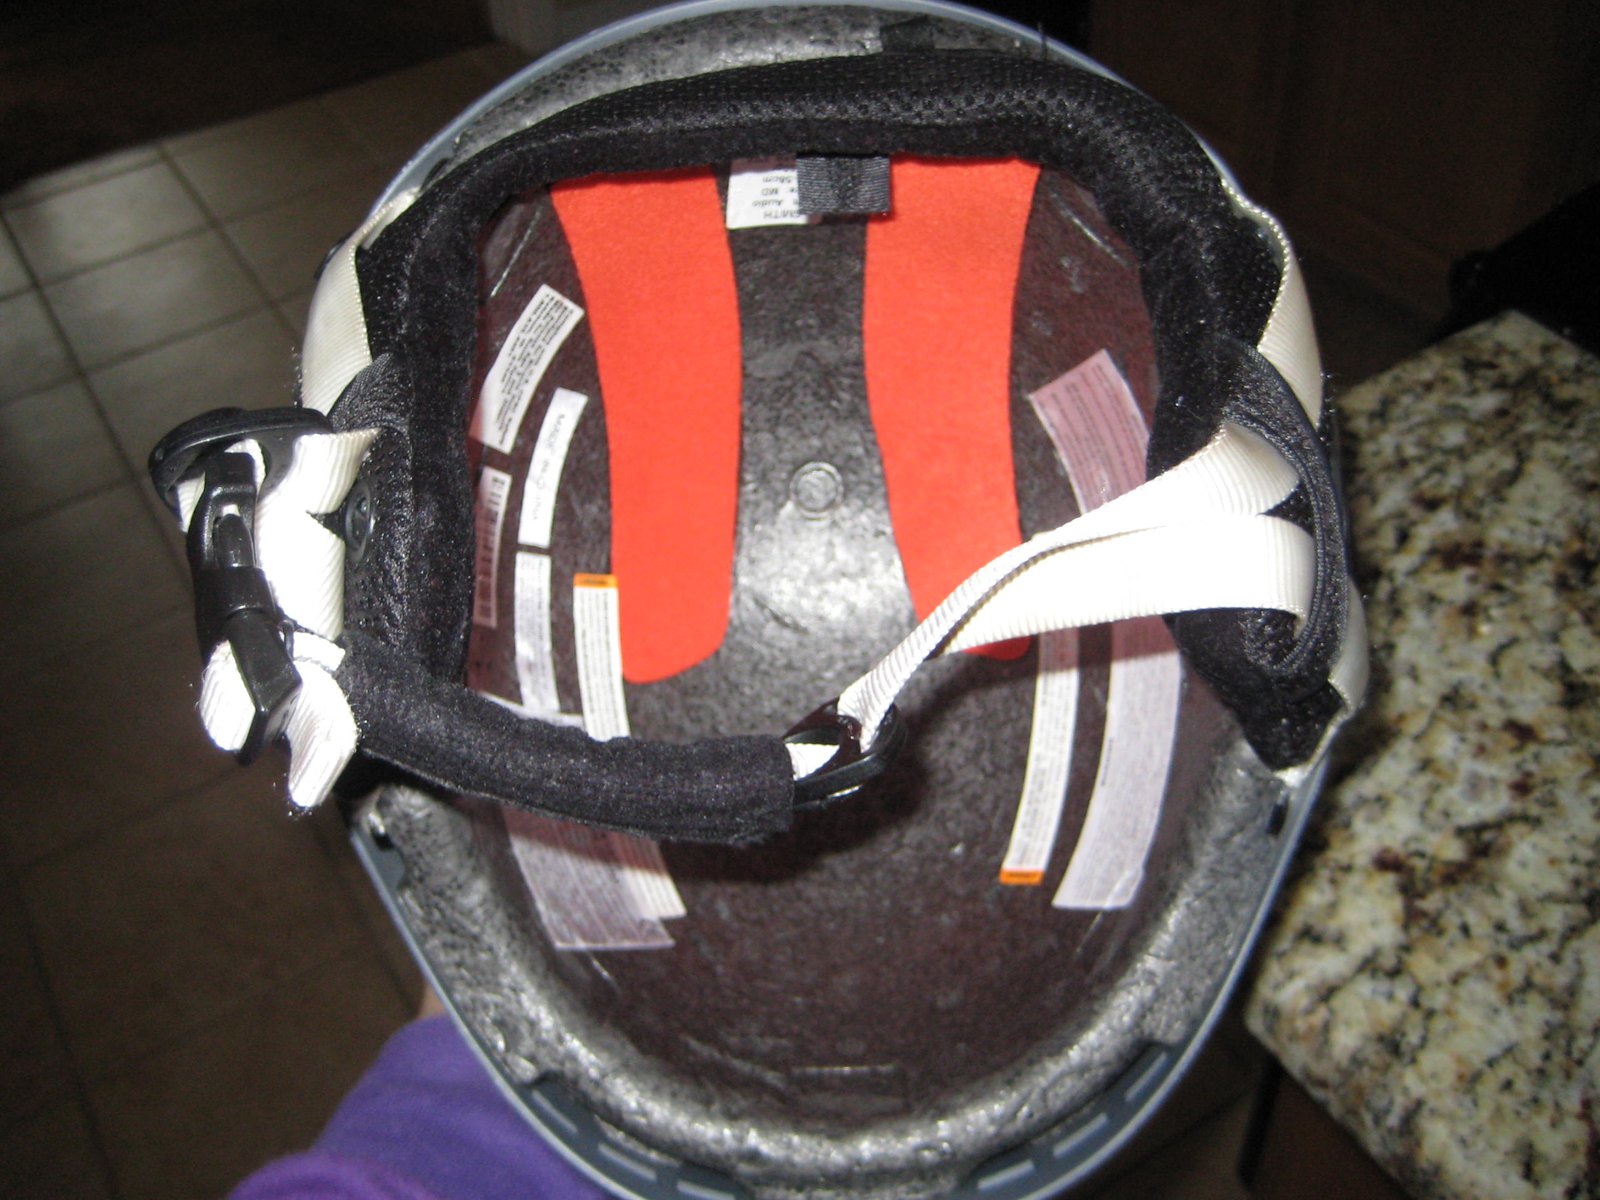 Helmet inside